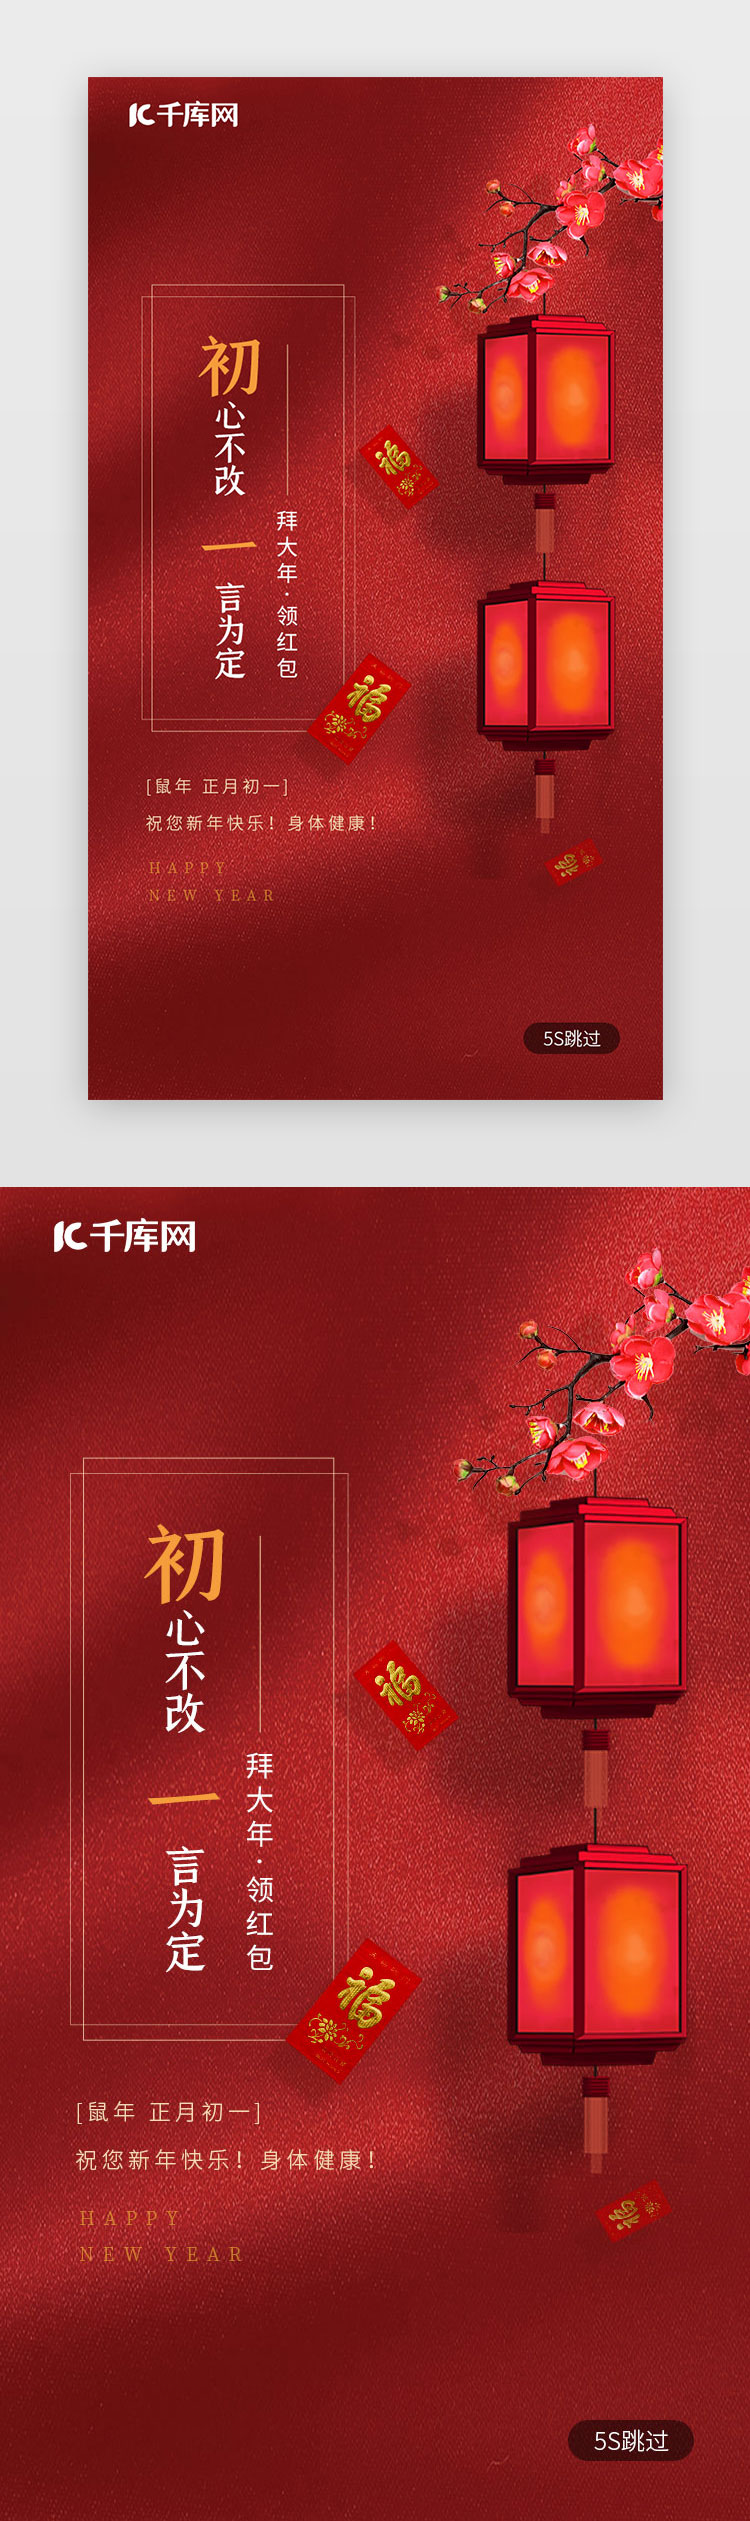 红色新年习俗大年初一拜大年春节闪屏启动页年俗图片